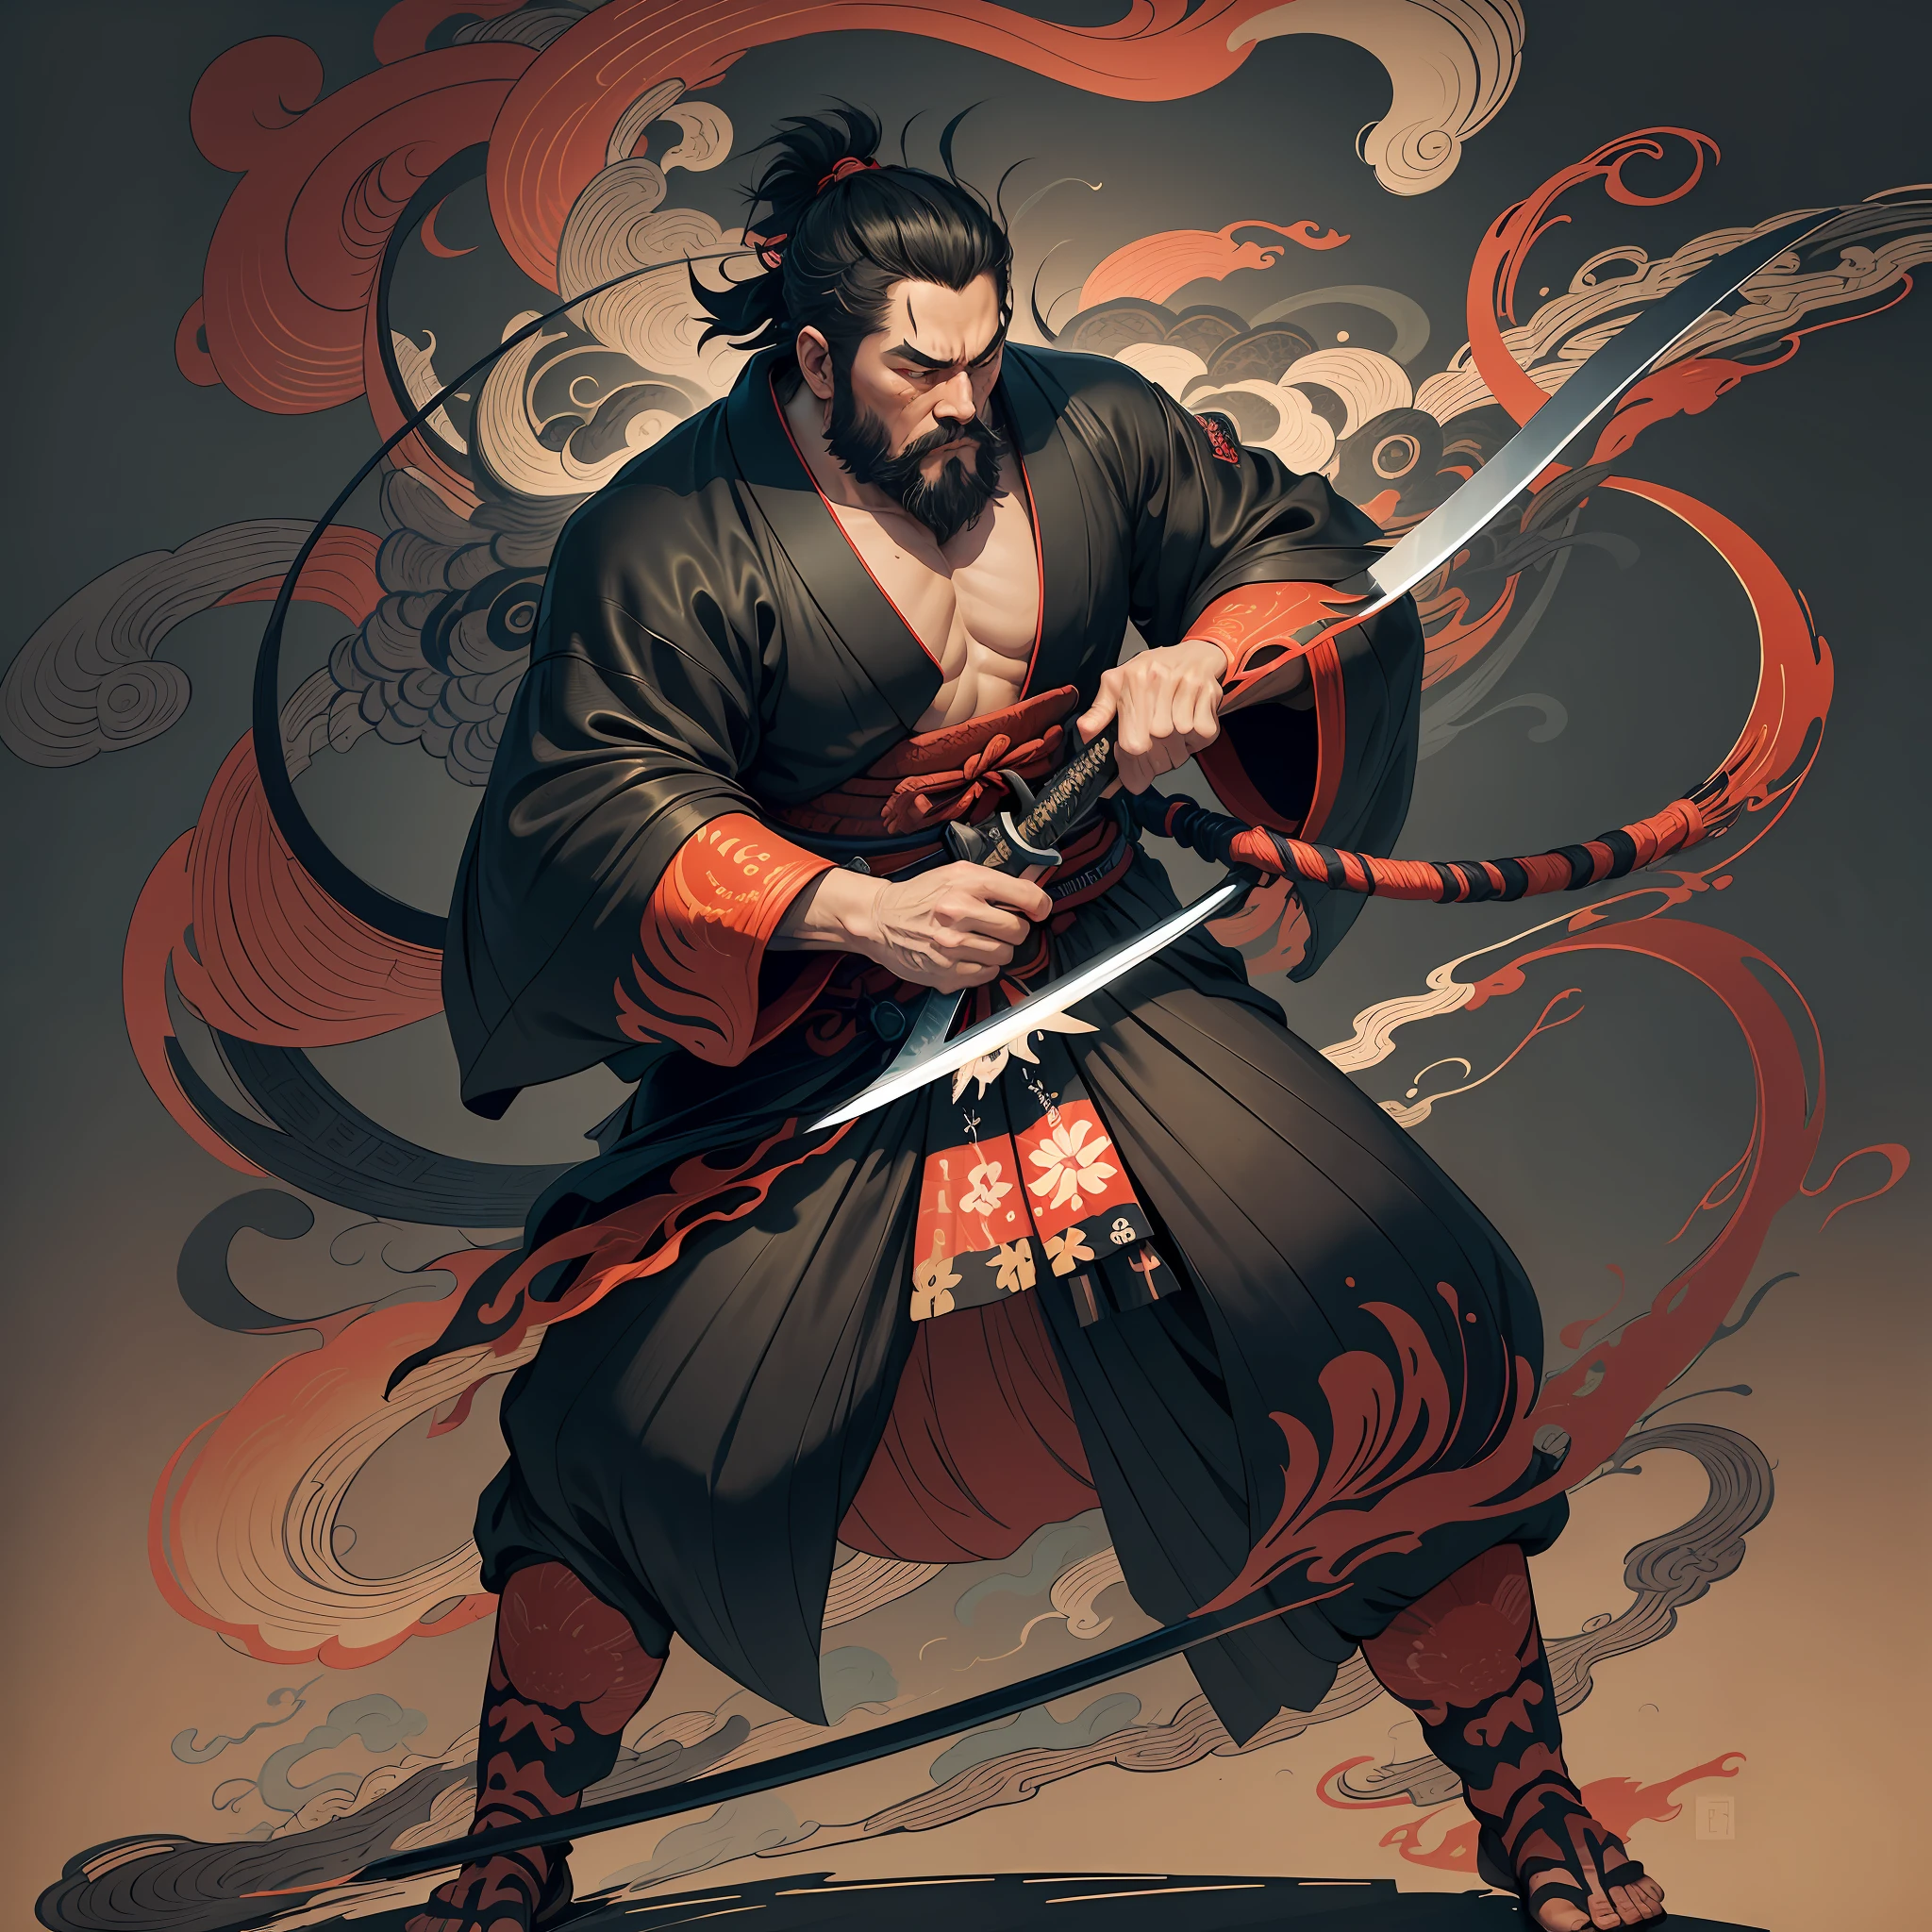 C&#39;est une peinture corporelle complète aux couleurs naturelles dans le style de l&#39;ukiyo-e.. Miyamoto Musashi est un samouraï japonais avec un grand corps comme un homme fort. Il a un visage dur, Les cheveux cours et noirs, et un court, barbe taillée. C&#39;est un samouraï juste qui combat le mal. Il porte un kimono noir. Le hakama doit être un peu plus long et avoir une forme fluide qui flotte au vent.. Il tient une épée dans sa main droite avec des flammes sortant de son épée japonaise.. L&#39;arrière-plan est une flamme tourbillonnante dans le style Katsushika Hokusai.. Chef-d&#39;œuvre de style ukiyo-e haute résolution, avec la plus haute qualité --auto --s2